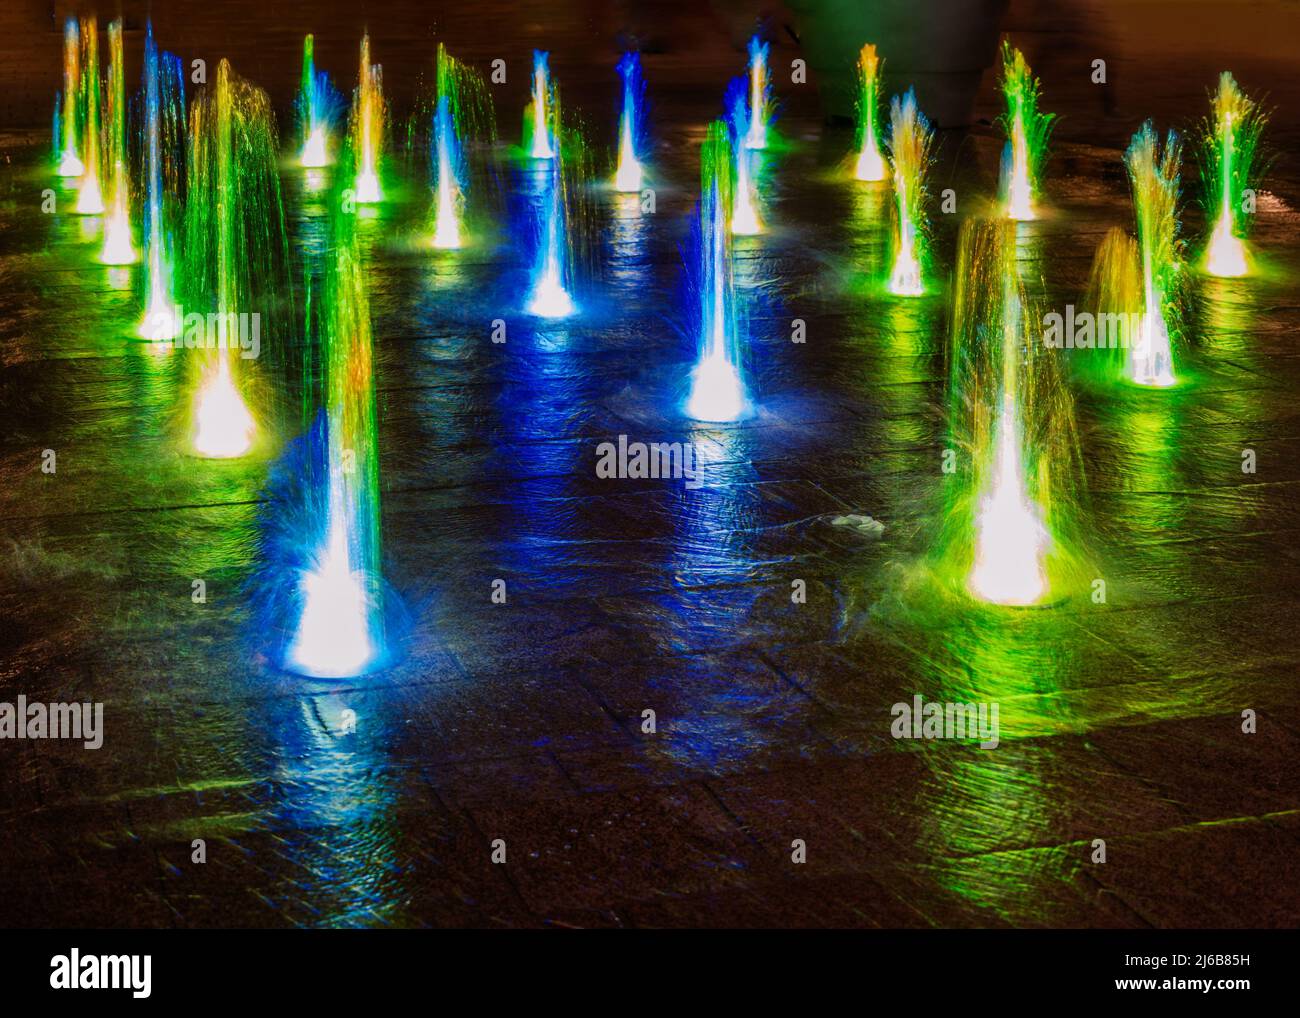 Fuente de agua luces iluminadas fotografías e imágenes alta resolución Alamy